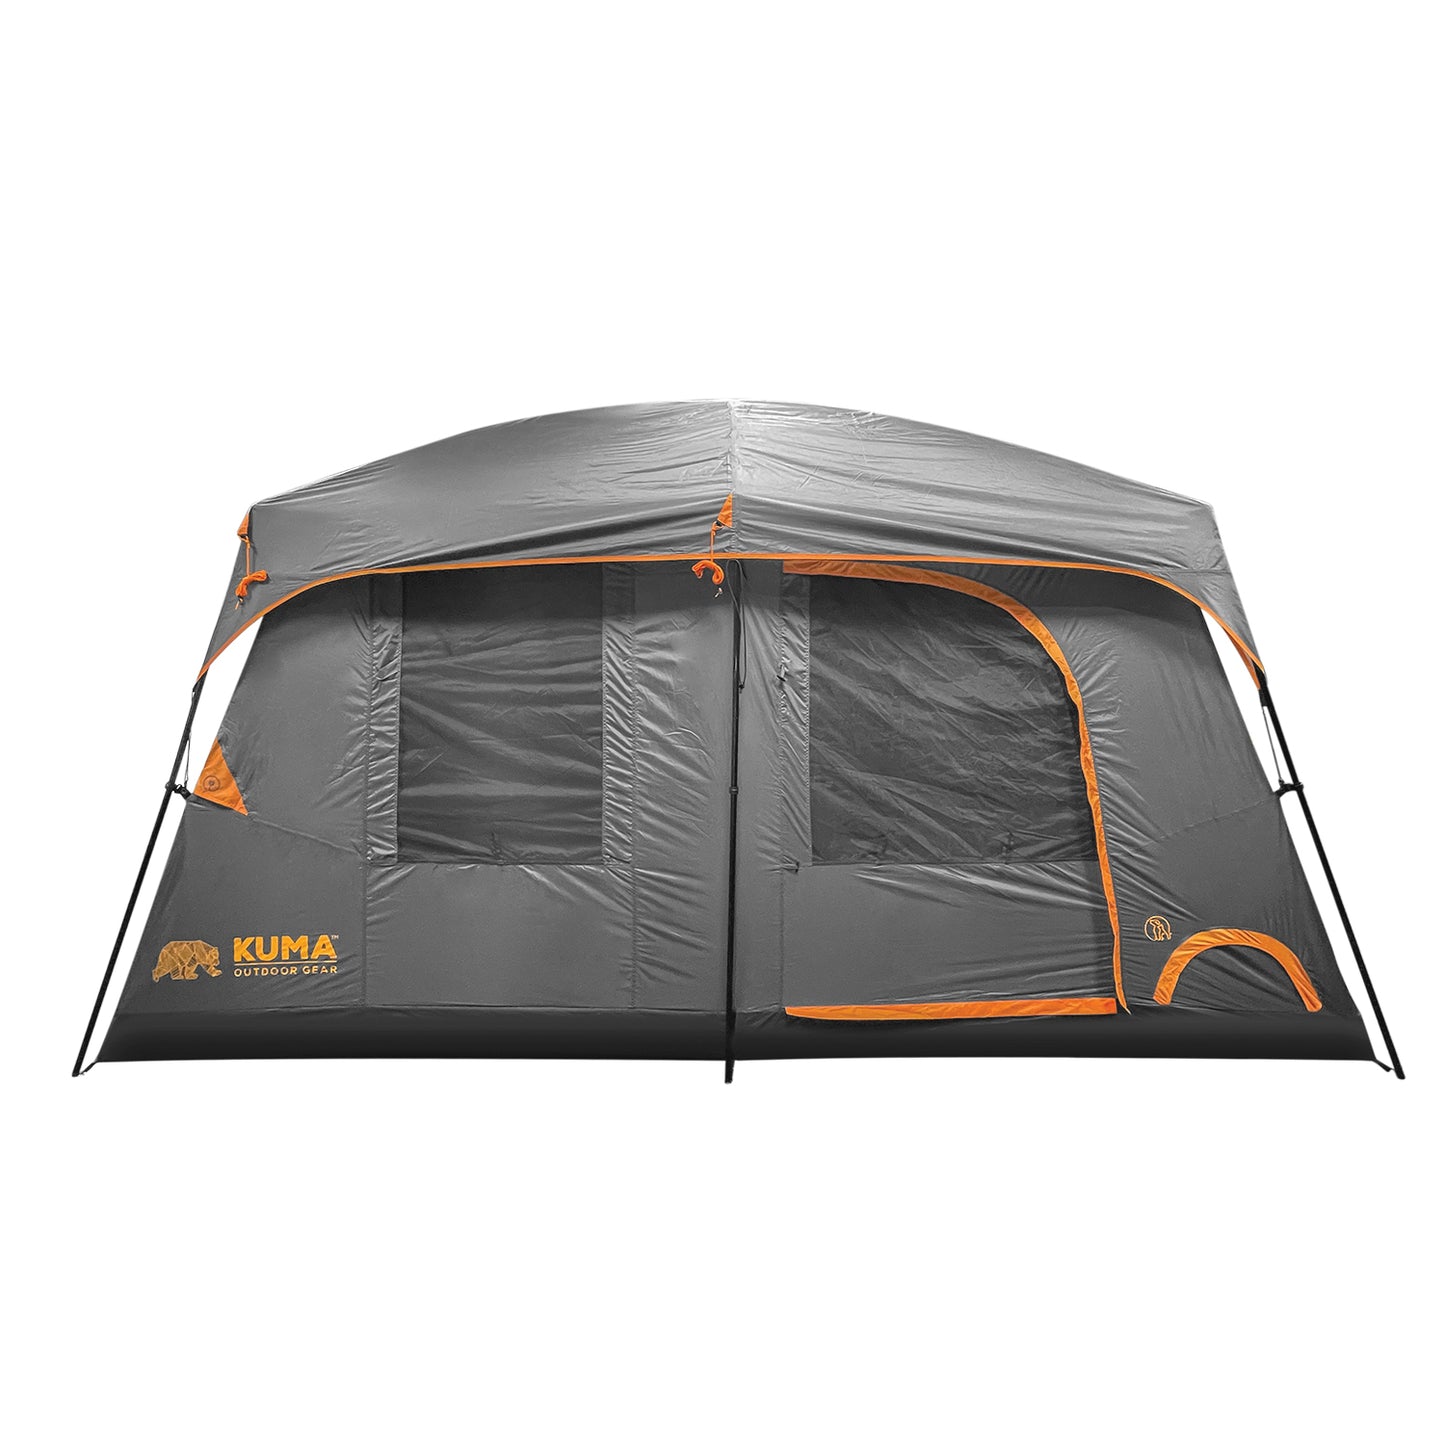 Tente Bear Den 9 Kuma (tente pour 9 personne)